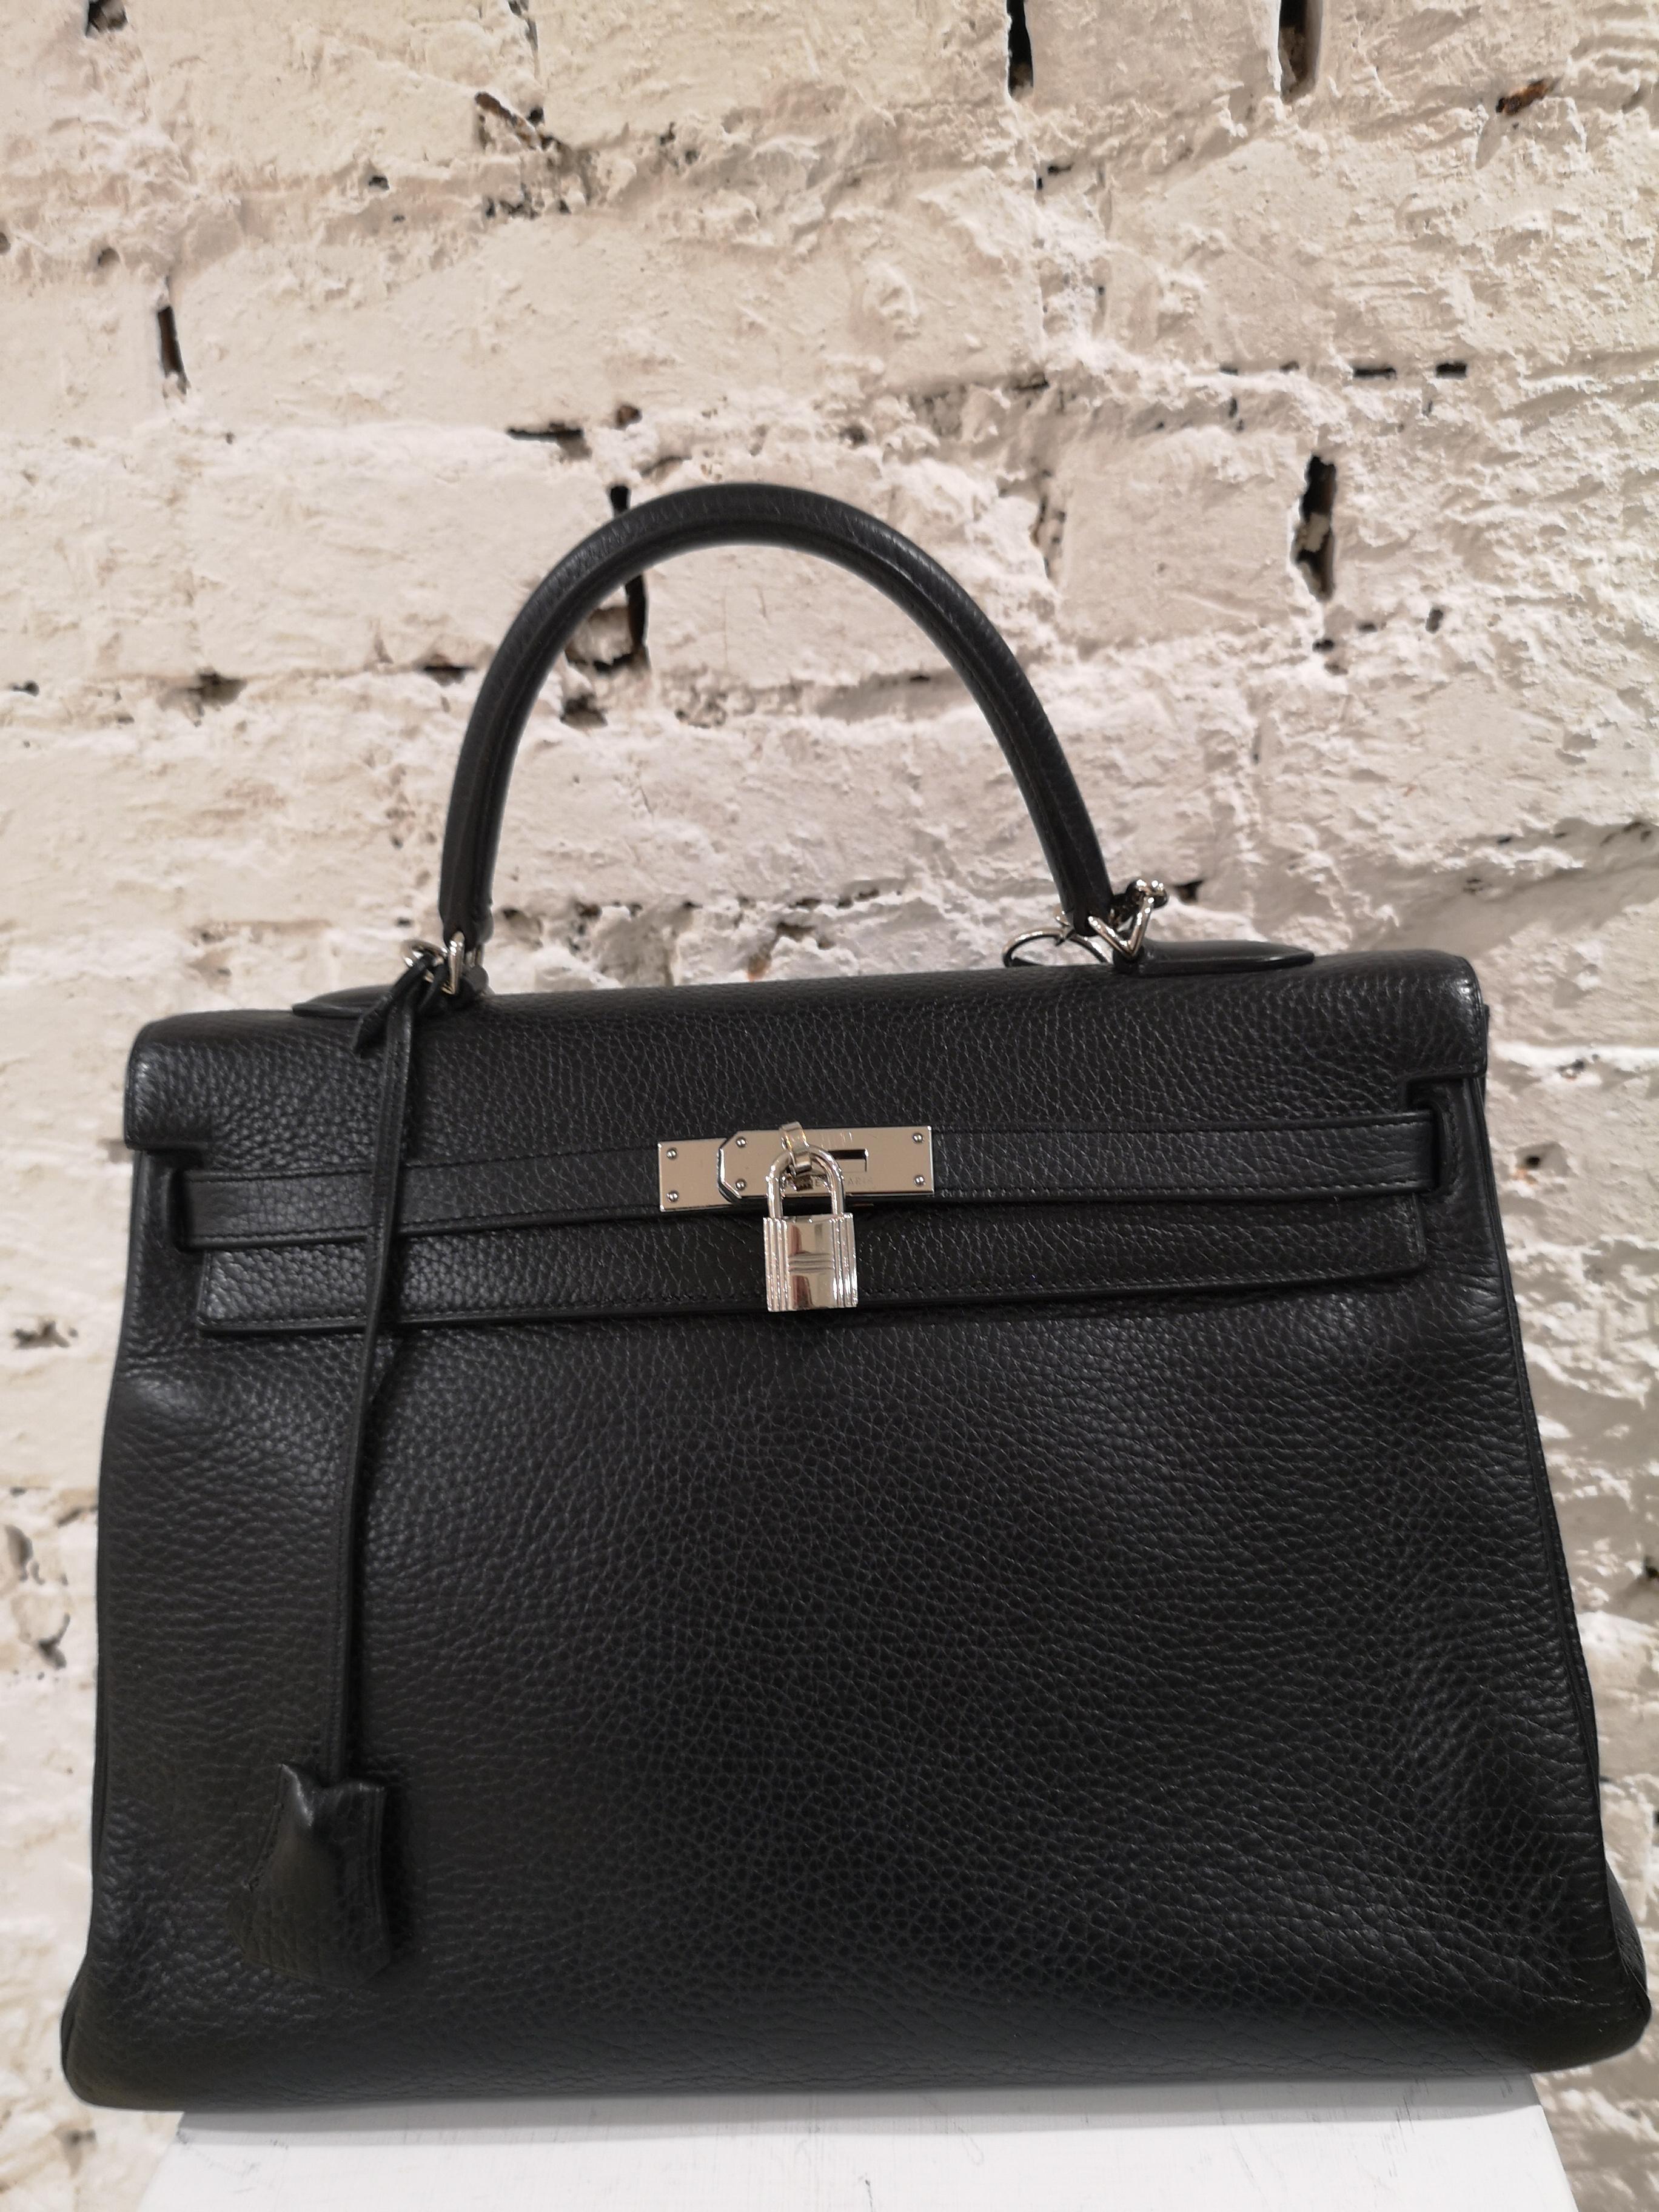 Hermès Kelly 35 black leather
shoulder strap and dust bag inside